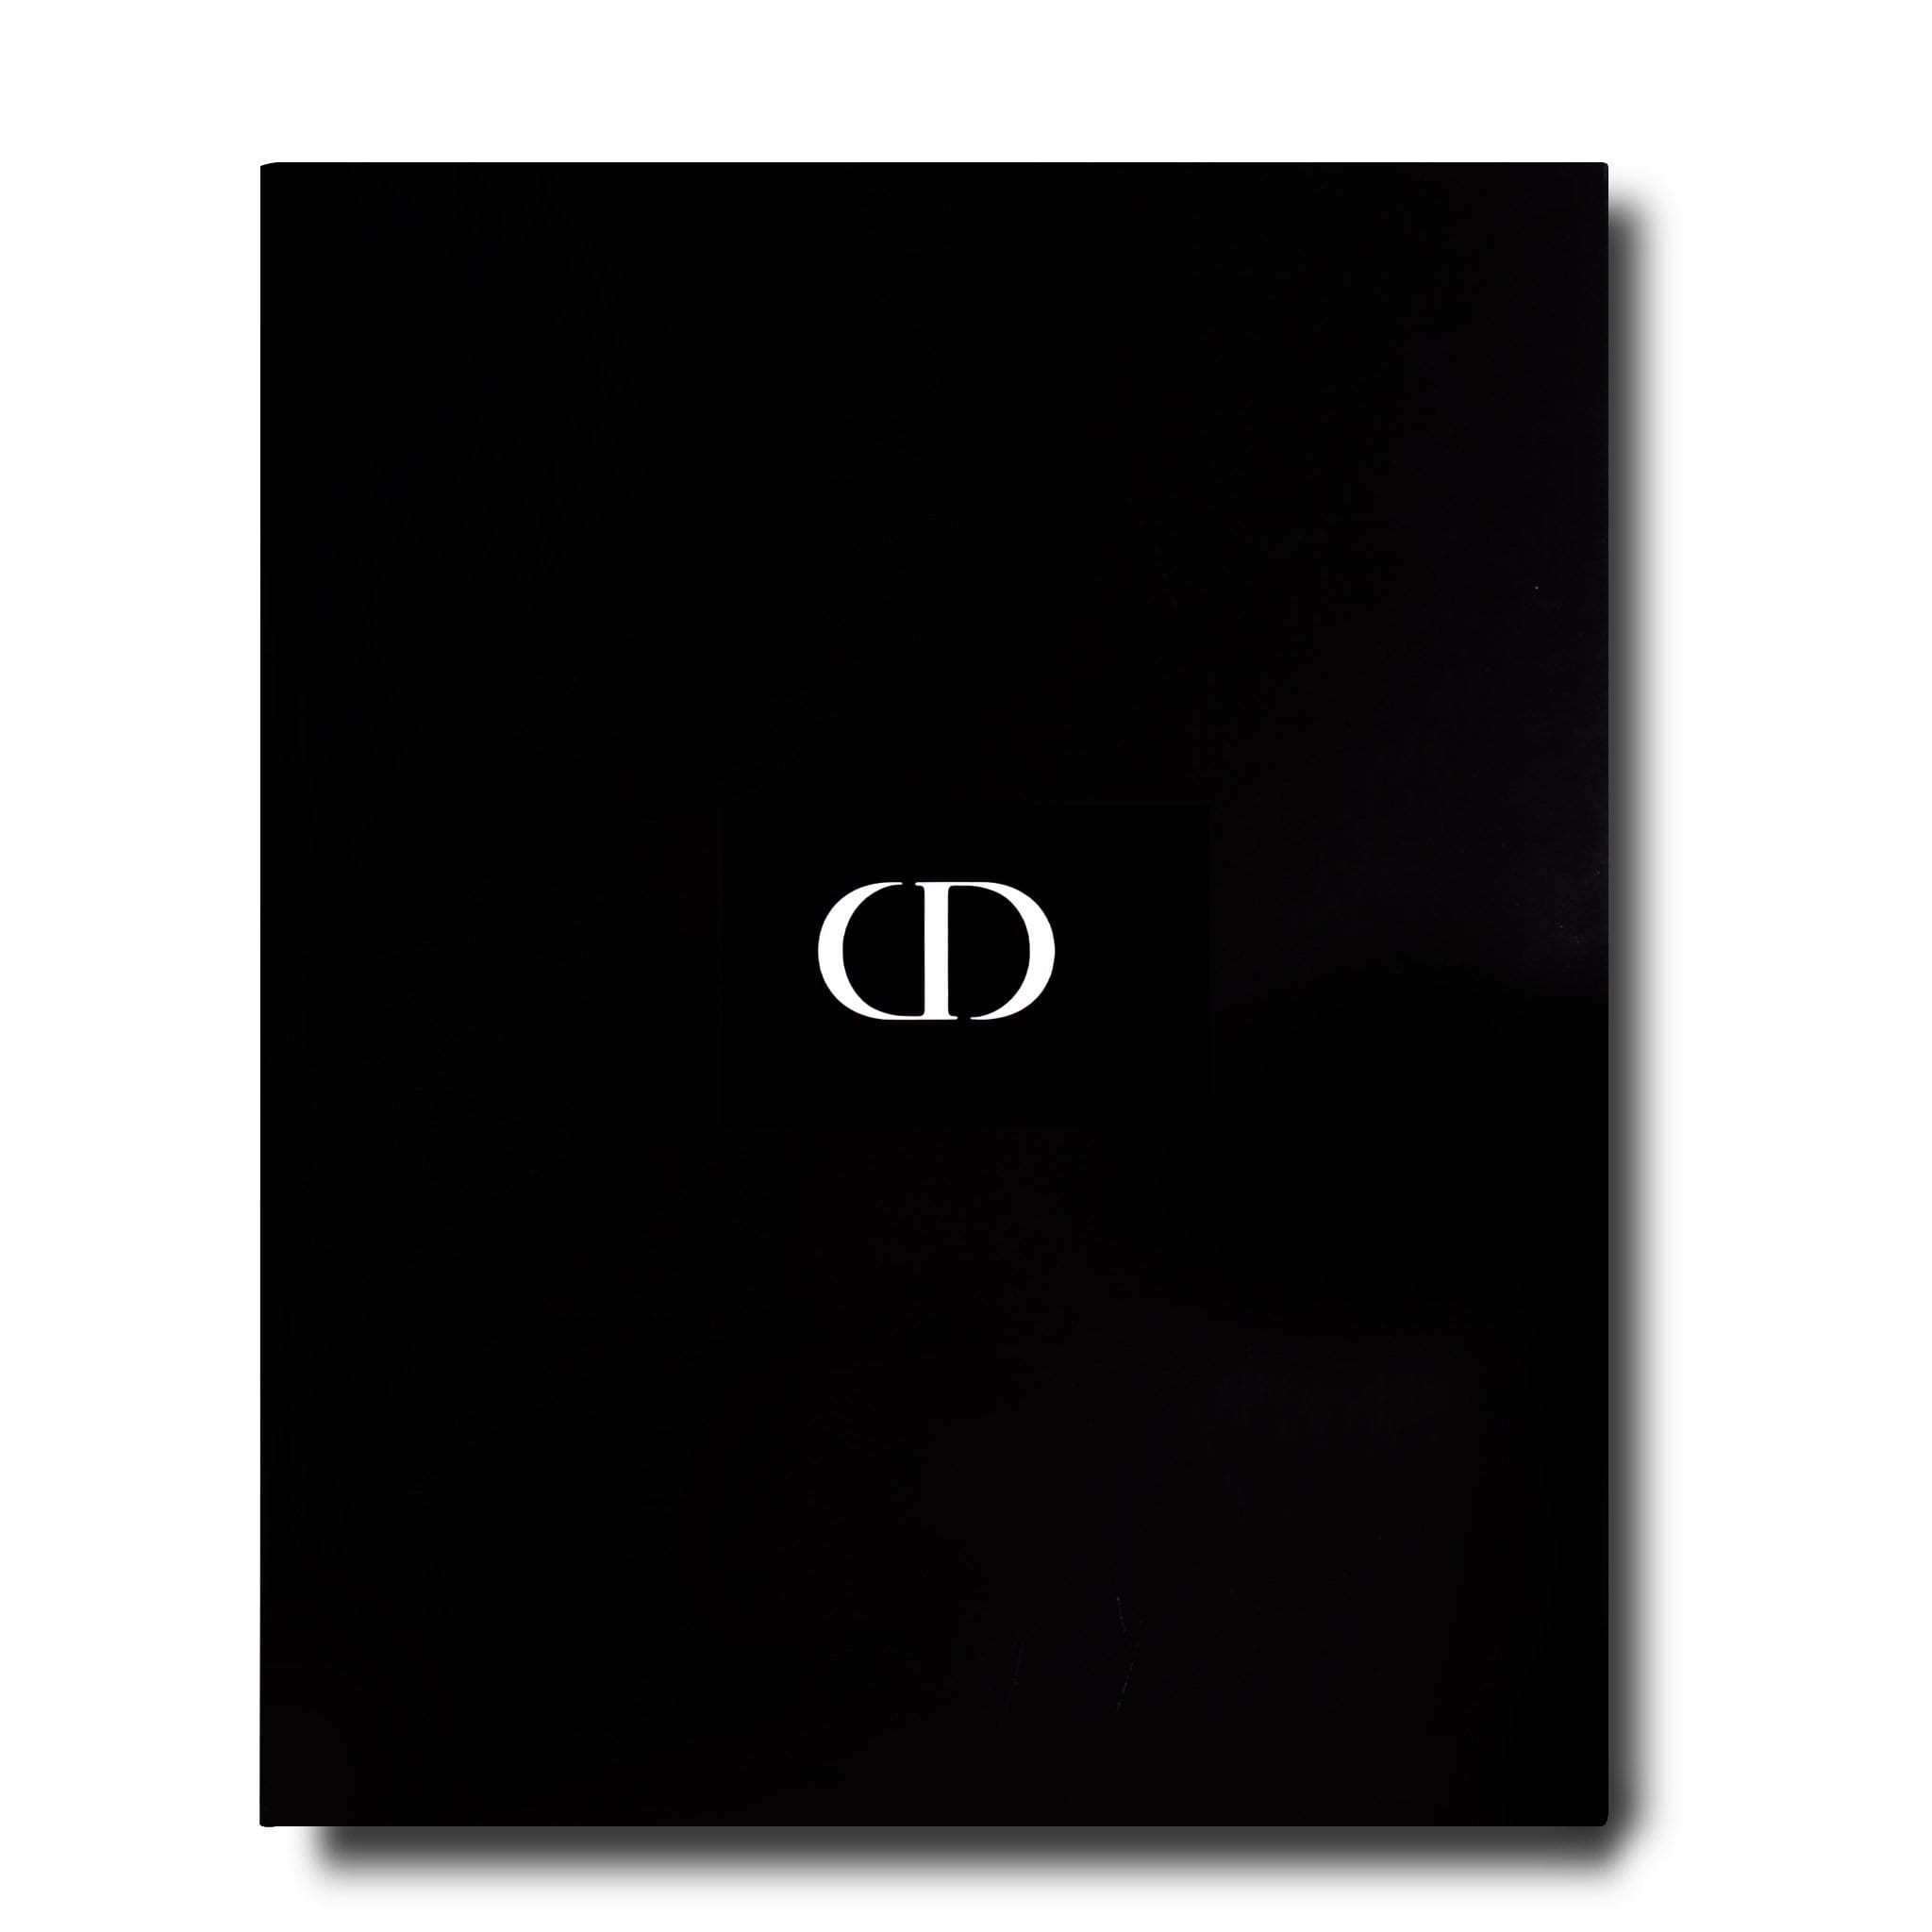 Assouline Dior von Christian Dior